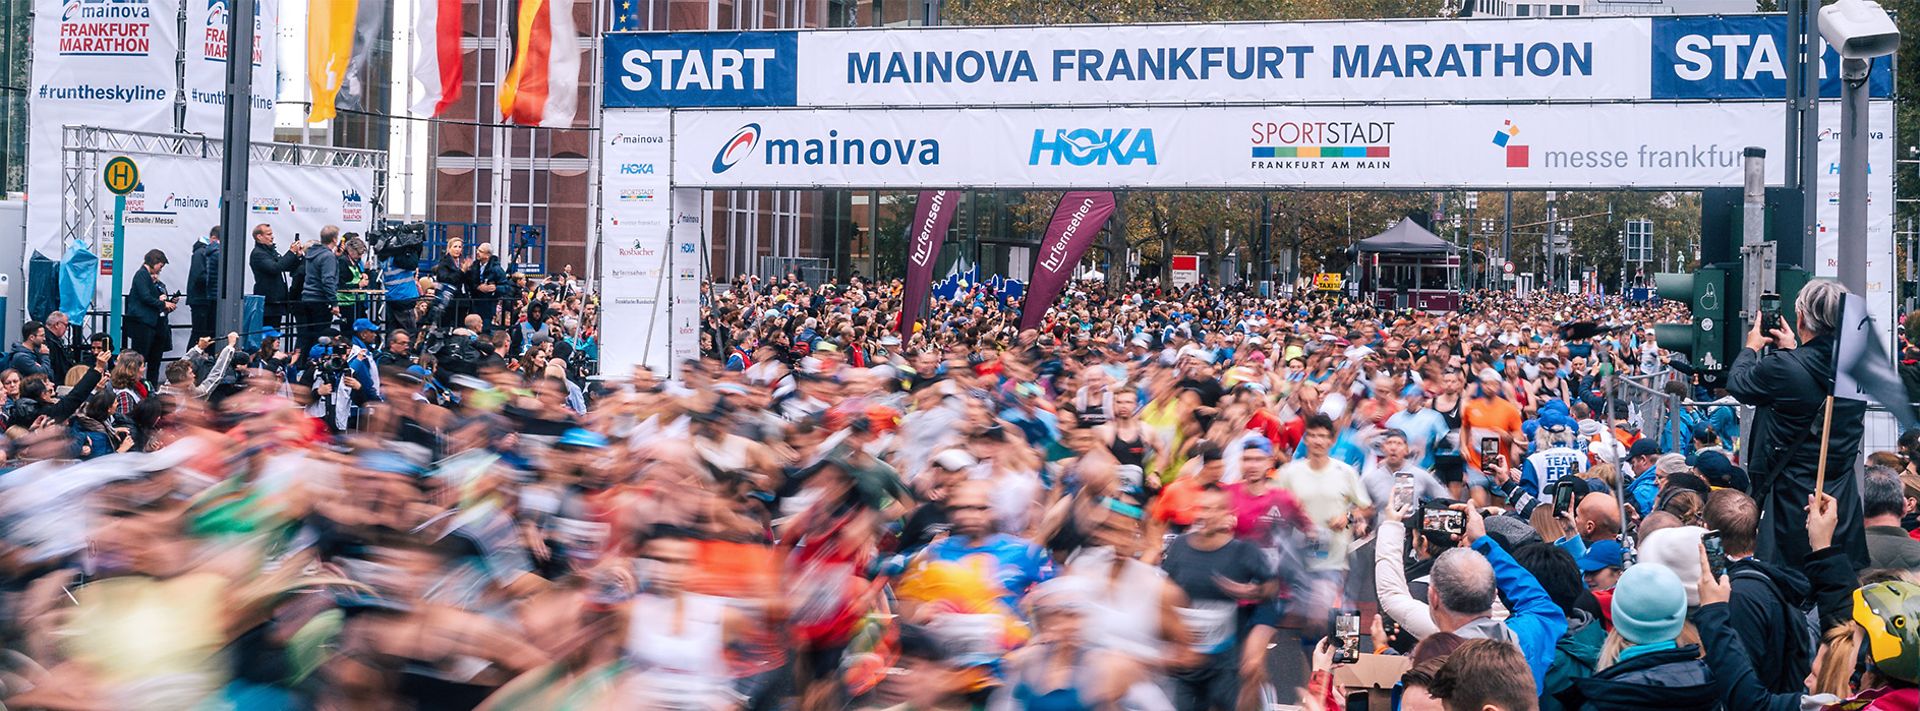 Start des Frankfurt Marathons mit Läufermenge und Zuschauern unter Werbebannern.